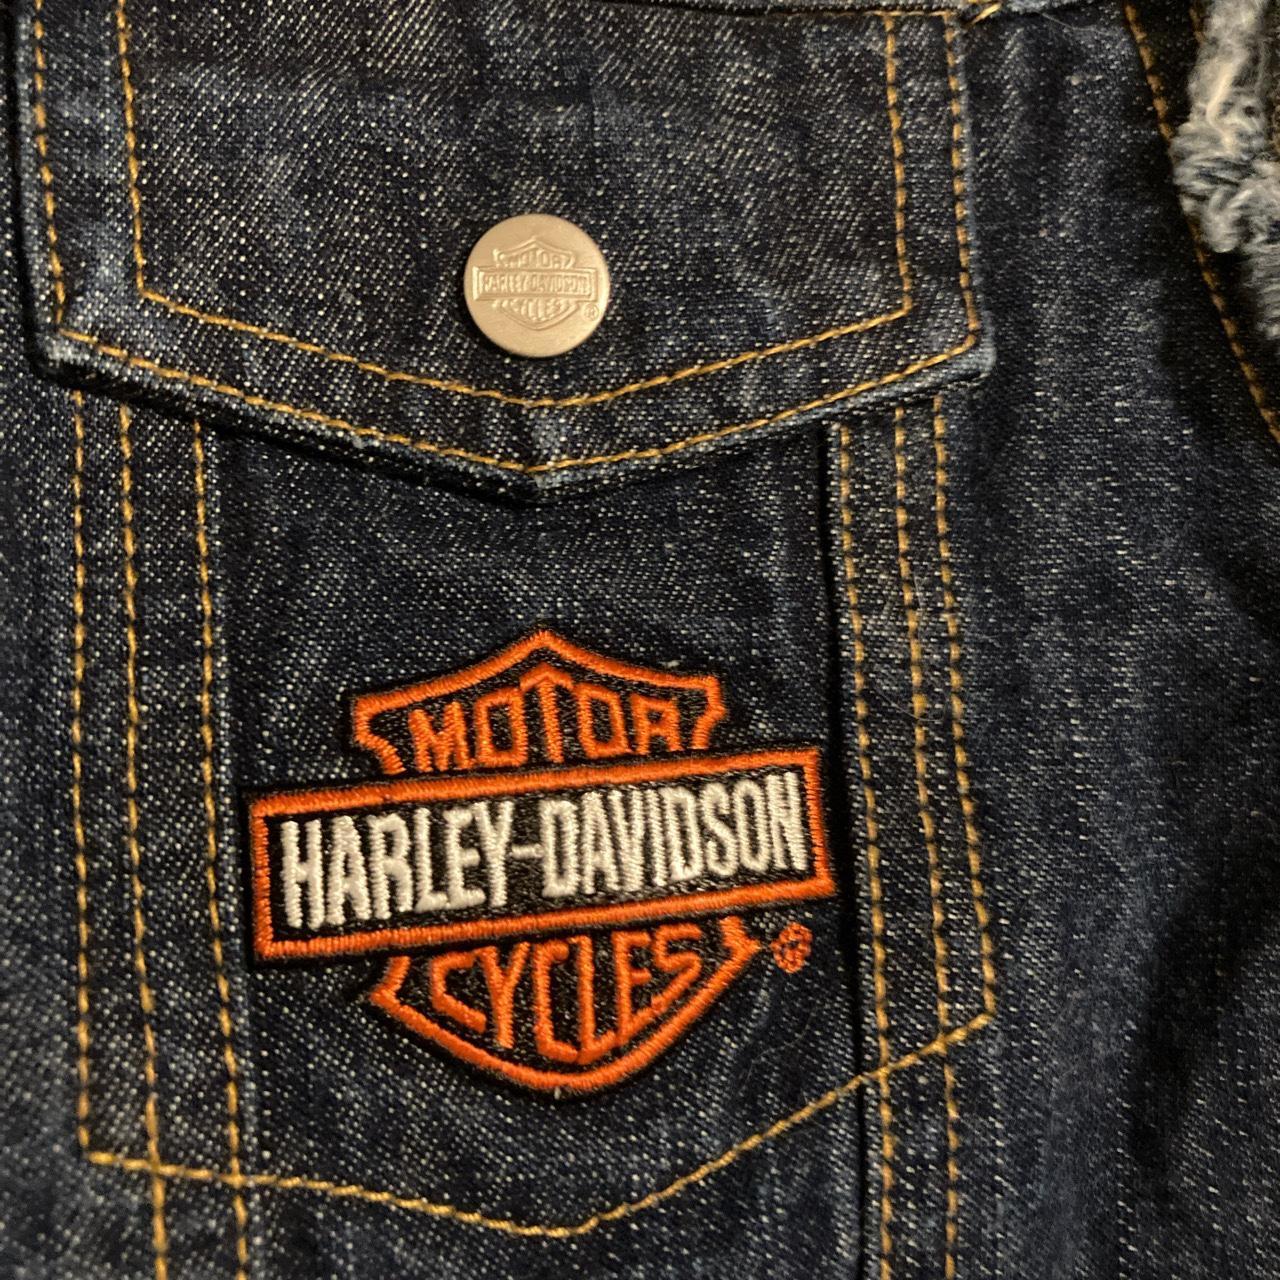 Harley Davidson vintage blue denim biker vest -Size... - Depop